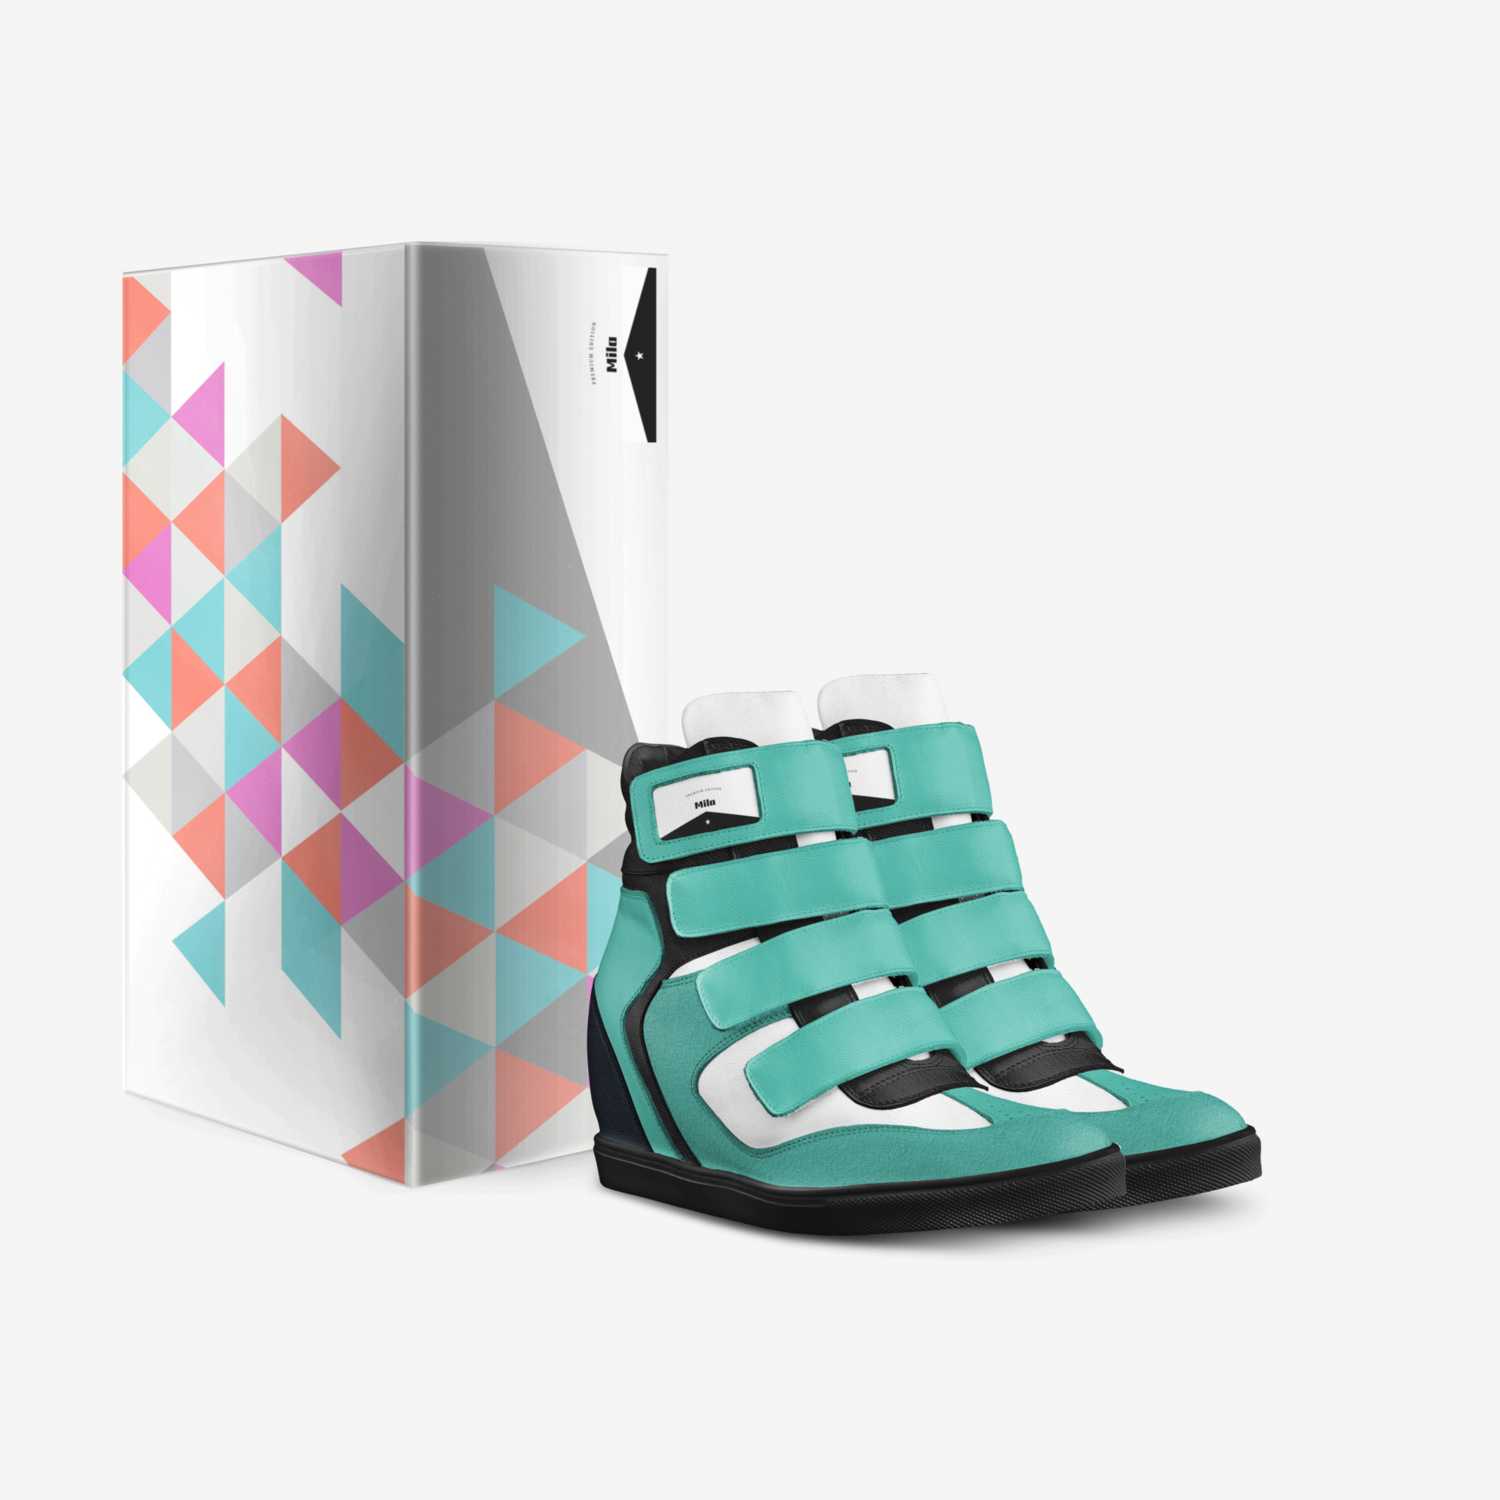 Mila custom made in Italy shoes by Jamila Ybarra | Box view